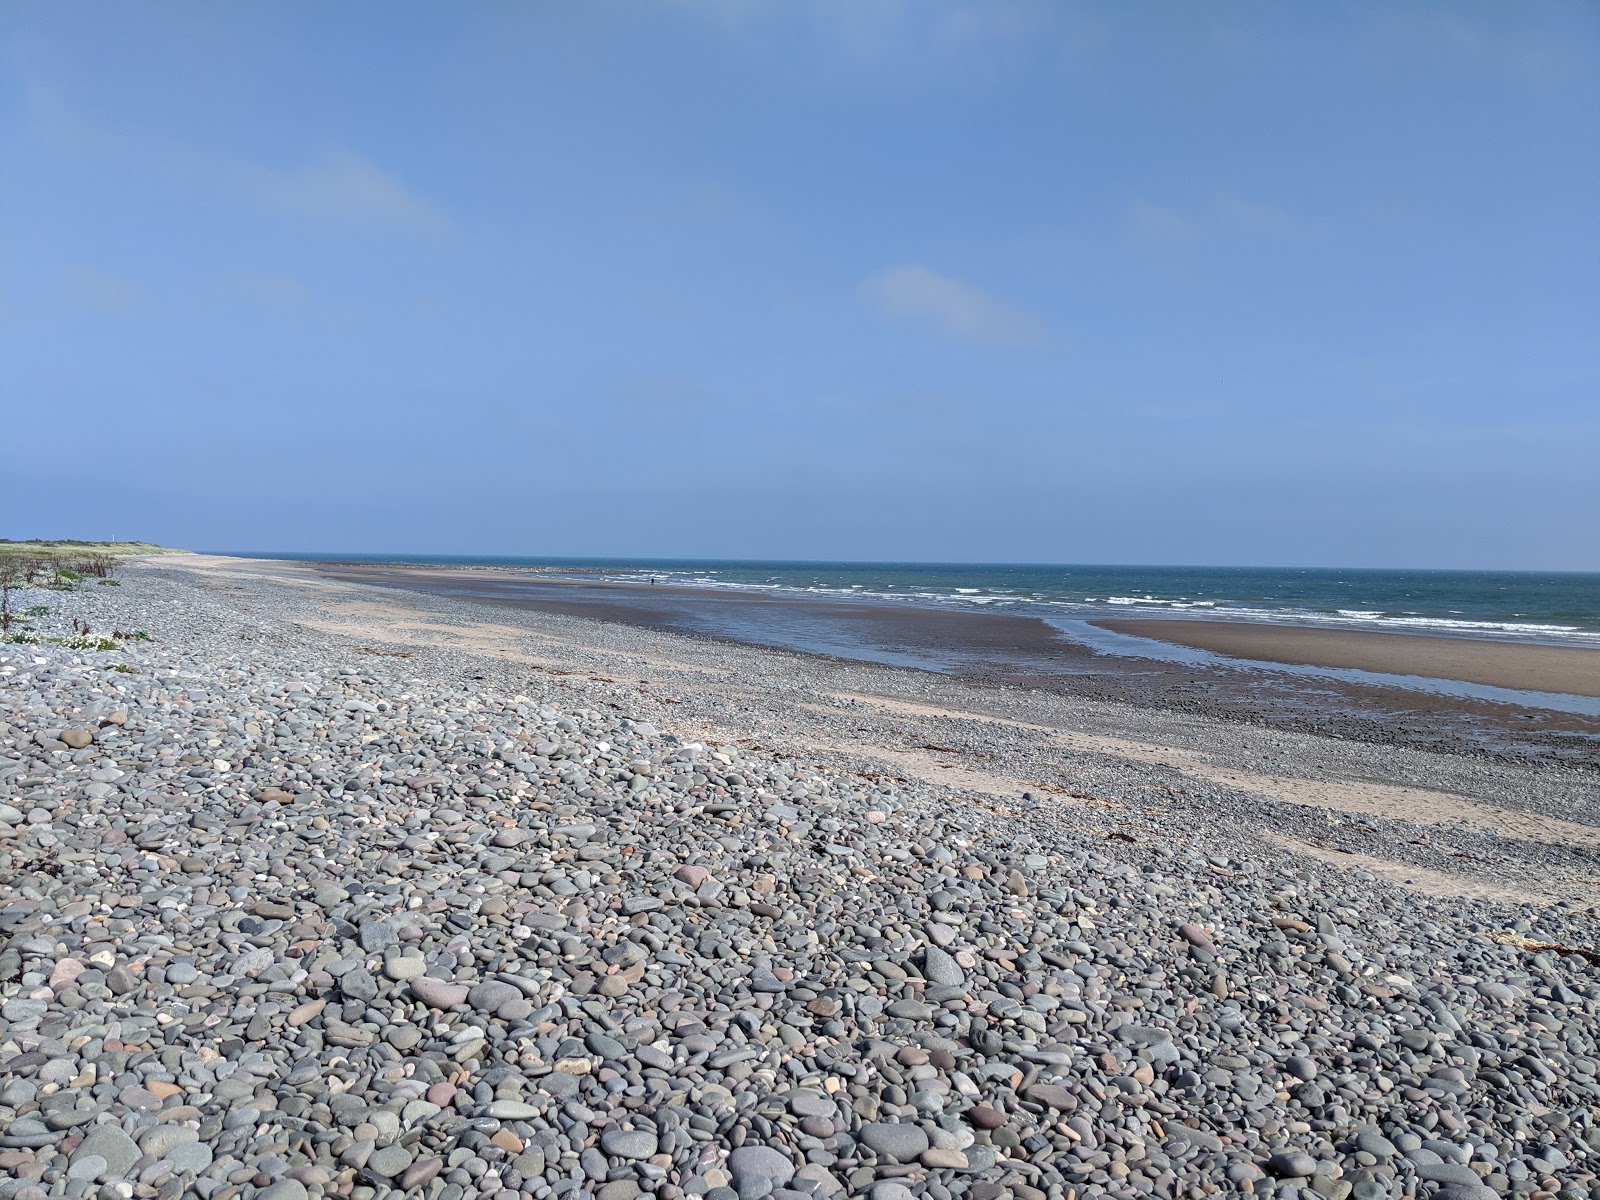 New England Bay Beach'in fotoğrafı gri çakıl taşı yüzey ile